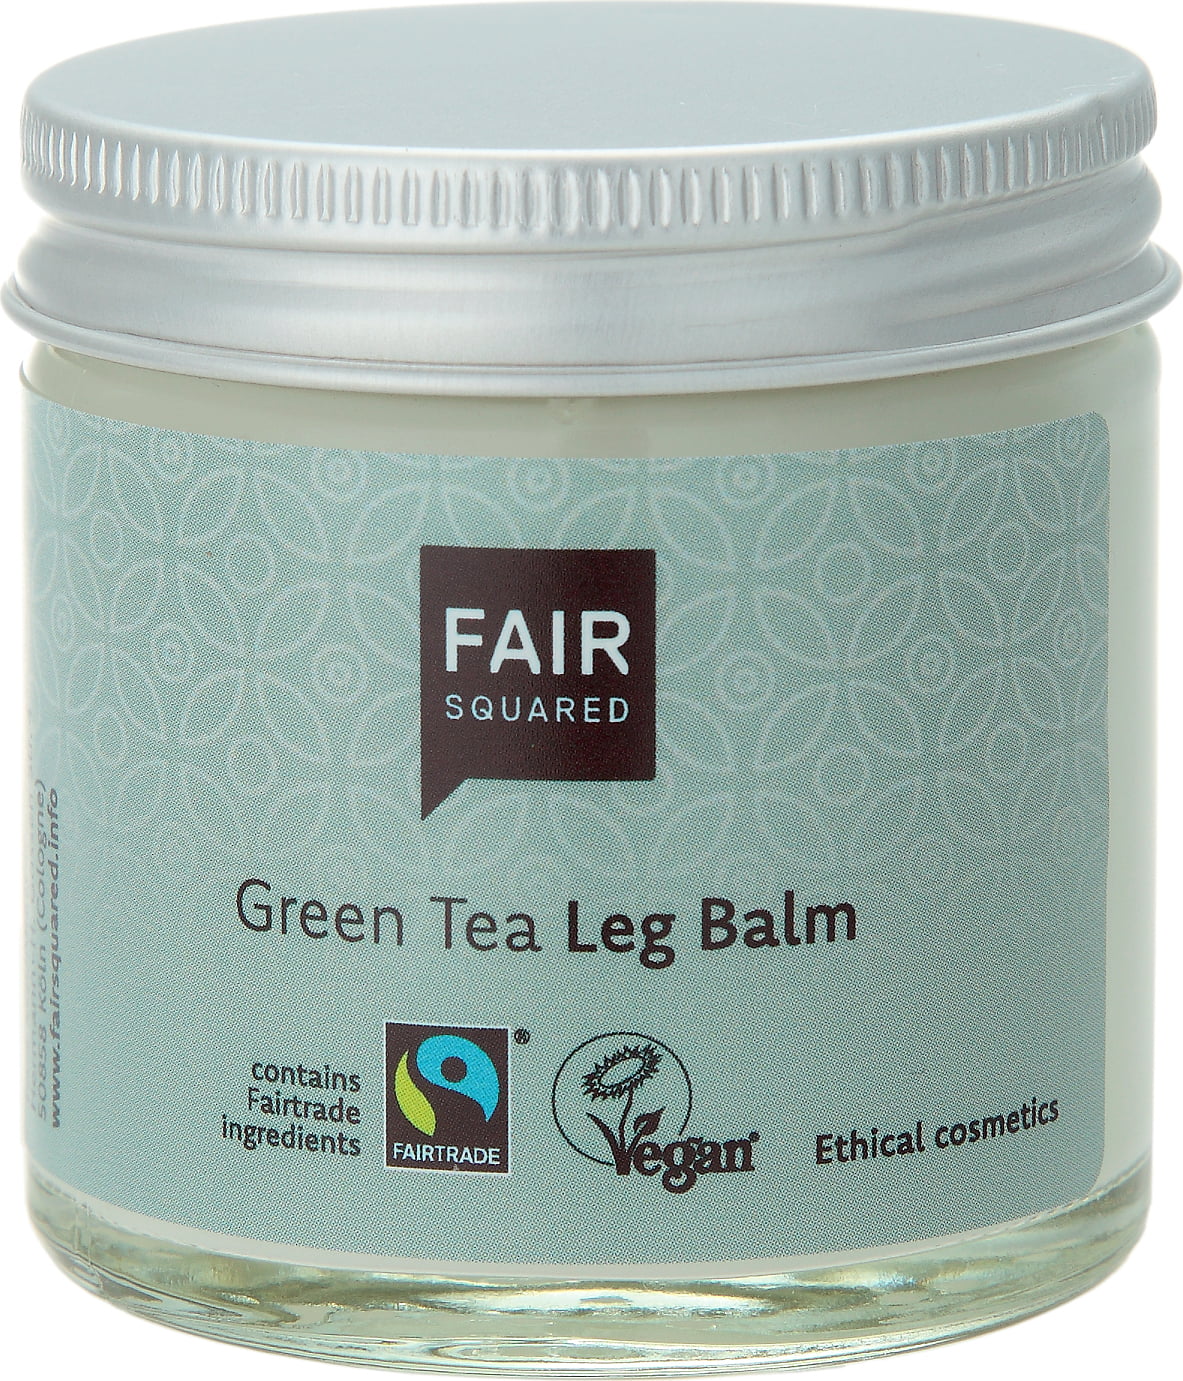 FAIR Squared Leg Balm Green Tea - Glass